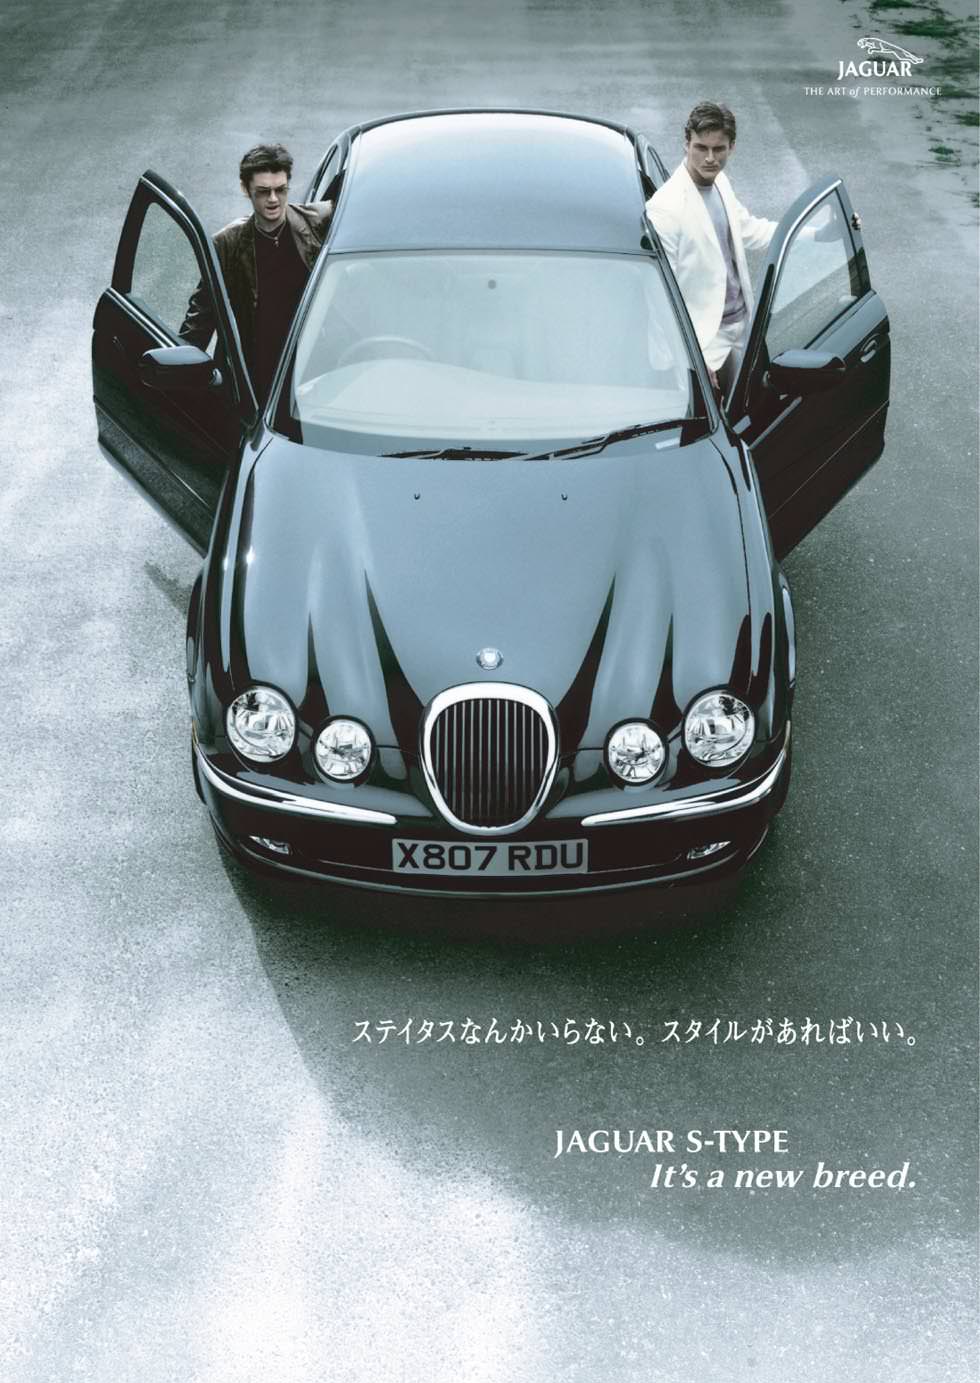 Jaguar Japan「Jaguar S type」 企画・撮影、ポスターデザイン、新聞広告デザイン キャッチコピーは「ステイタスなんかいらない。スタイルがあればいい。」